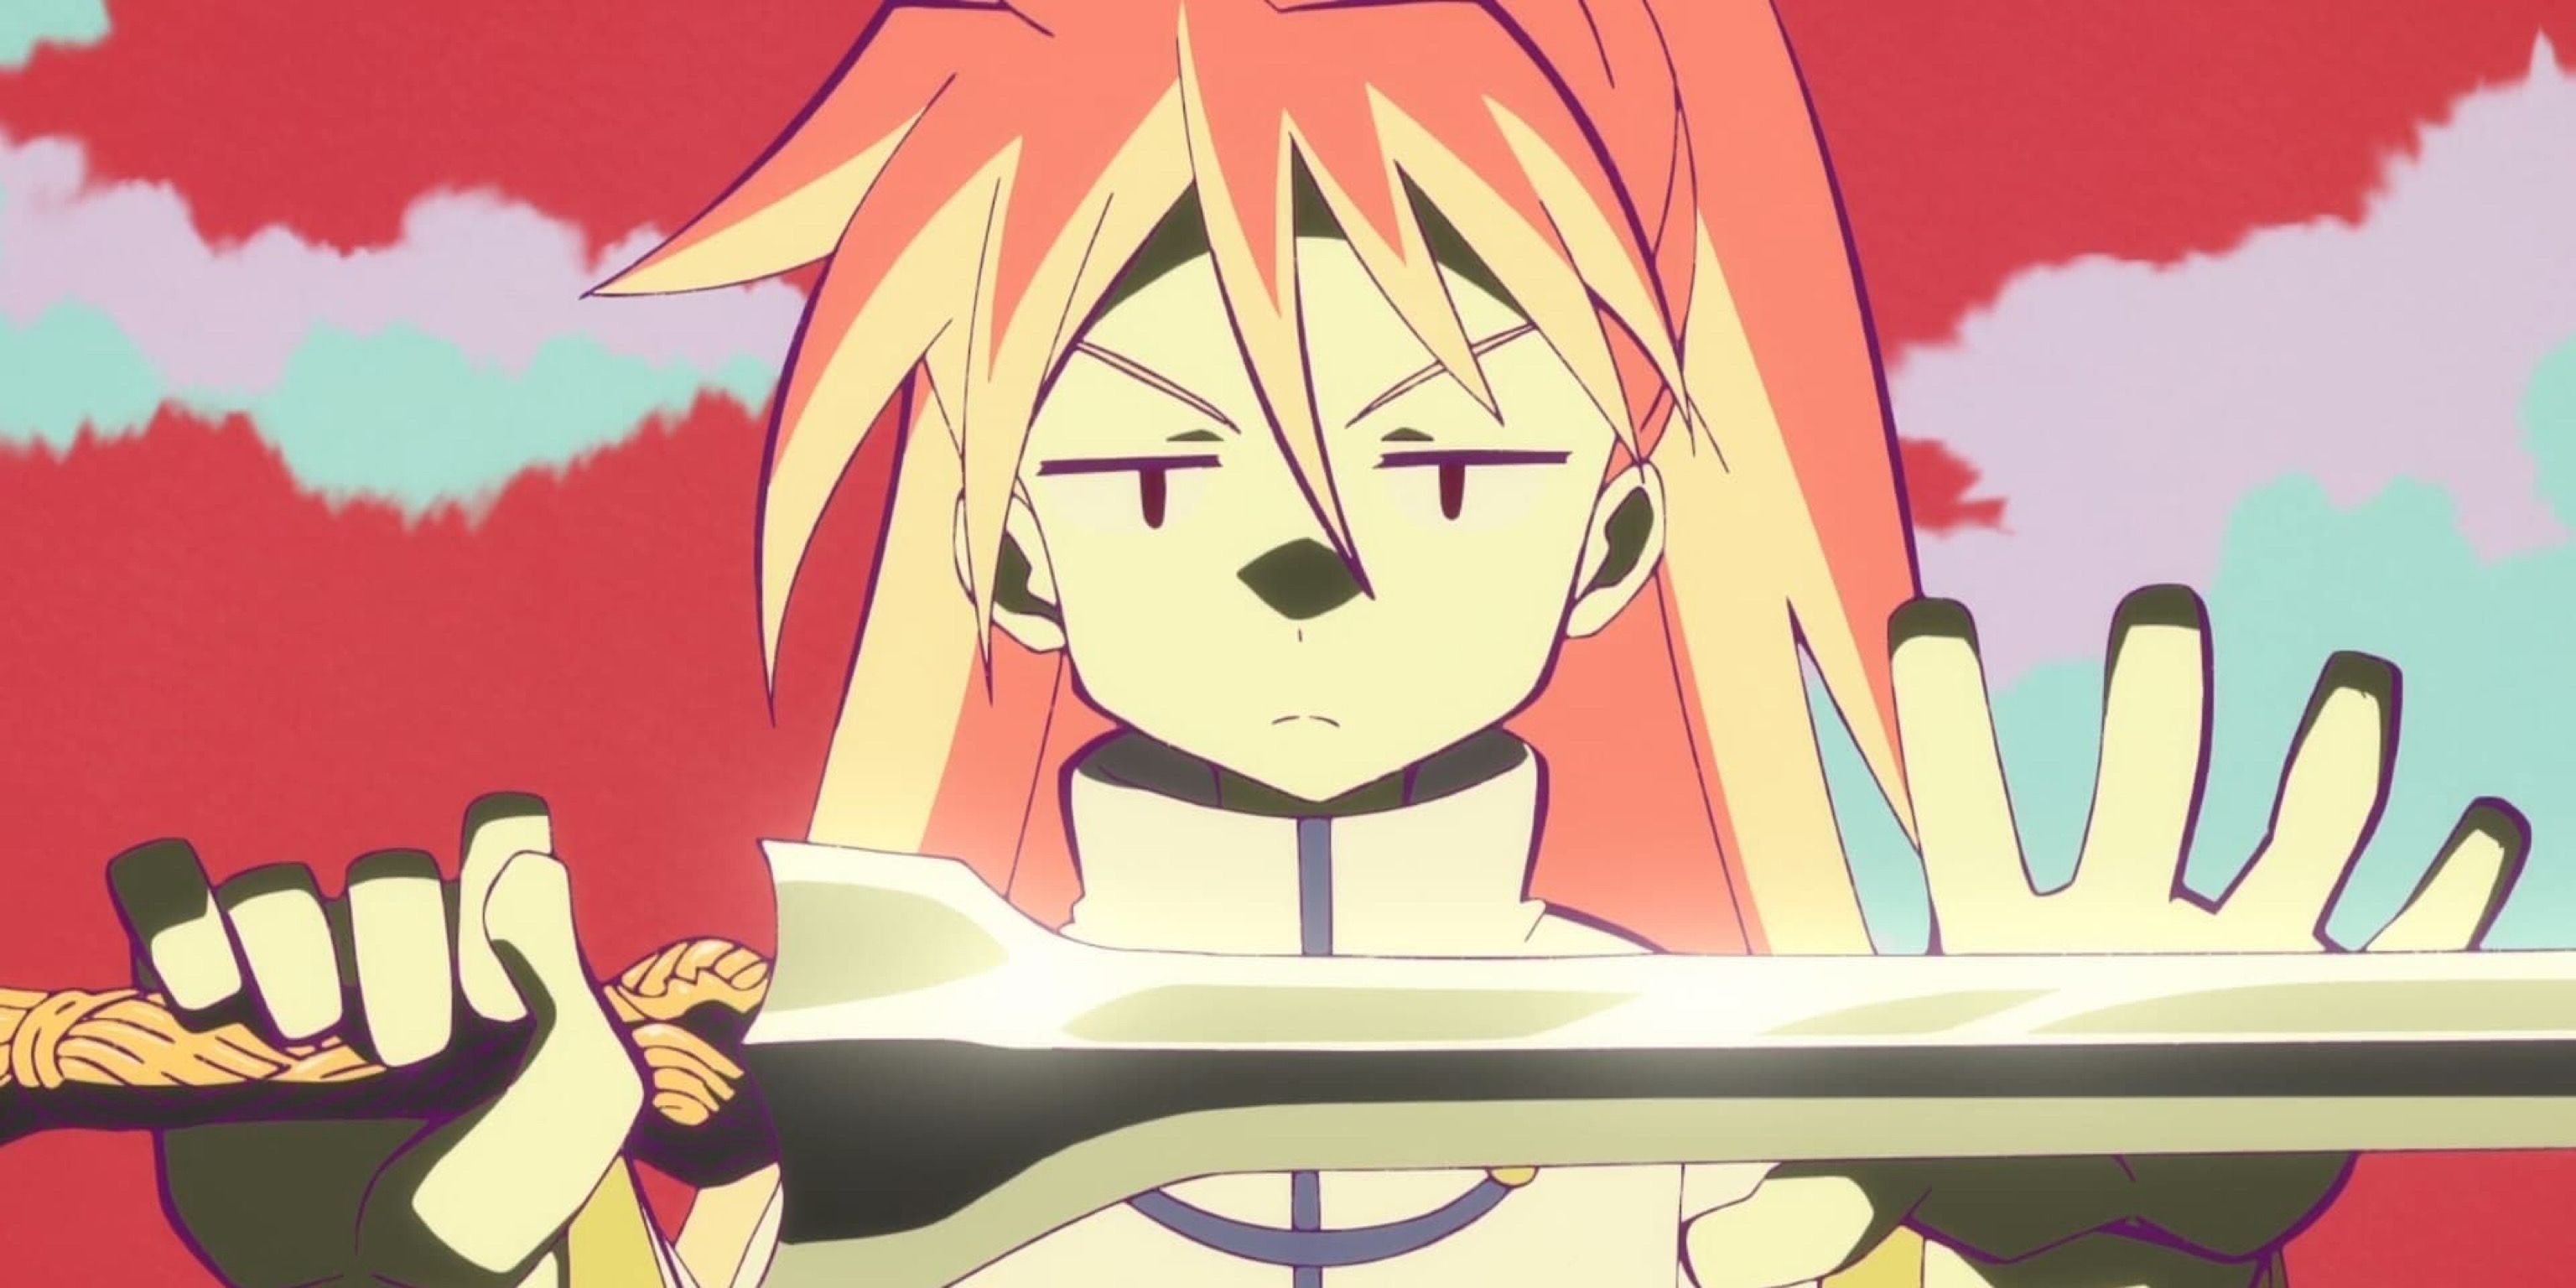 Rin se prepara para ejecutar níquel con su espada en The Idaten Deities Knows Only Peace.